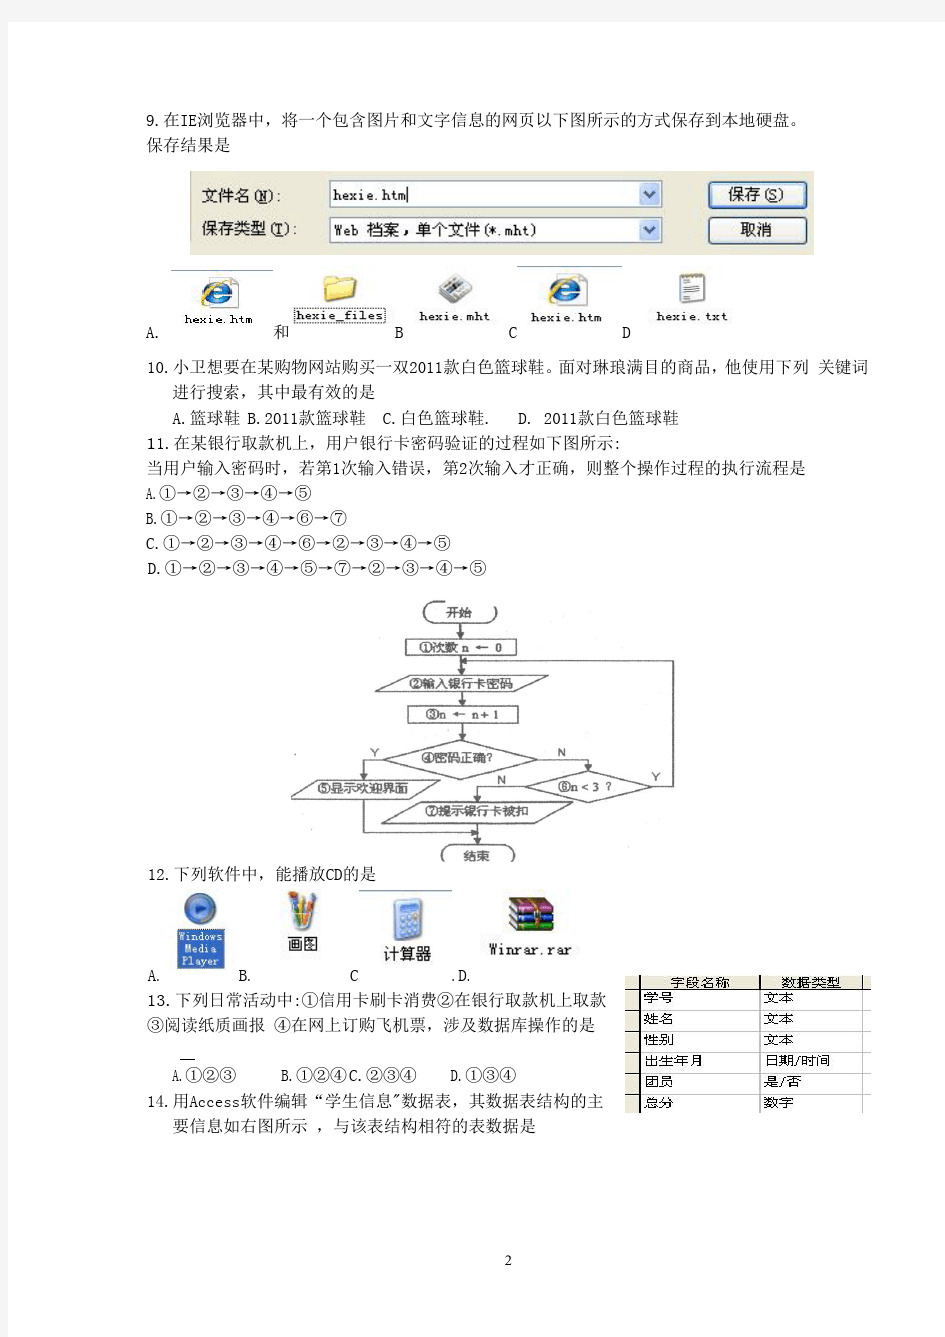 2011年3月浙江省信息技术高考试卷(含答案)